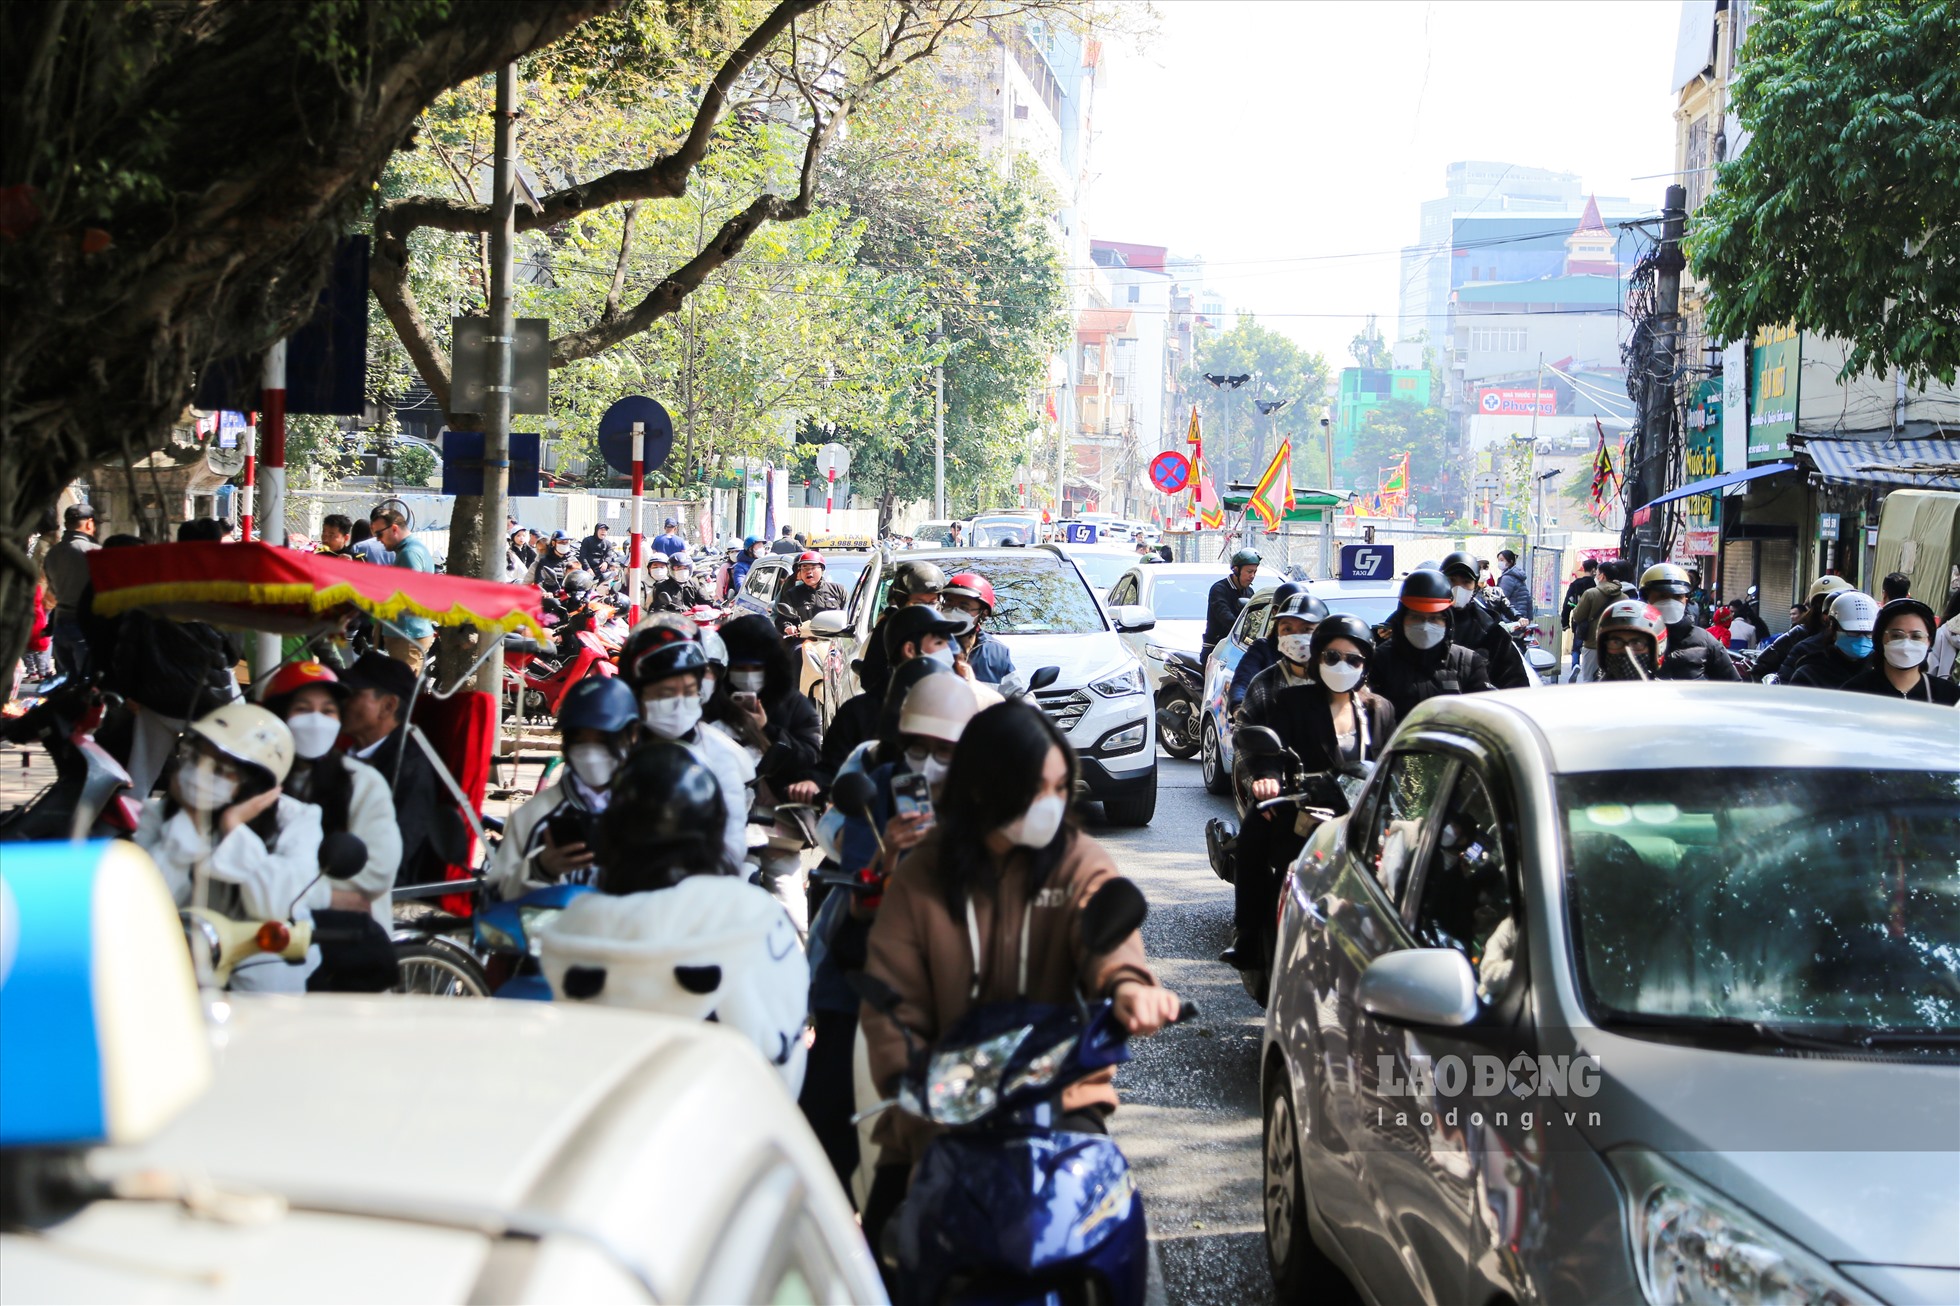 Ngày cuối tuần, giao thông tại khu vực các ngả đường xung quanh Văn Miếu - Quốc Tử Giám trở nên hỗn loạn, khi rất đông người từ nhiều nơi đổ về đây lễ đầu năm.